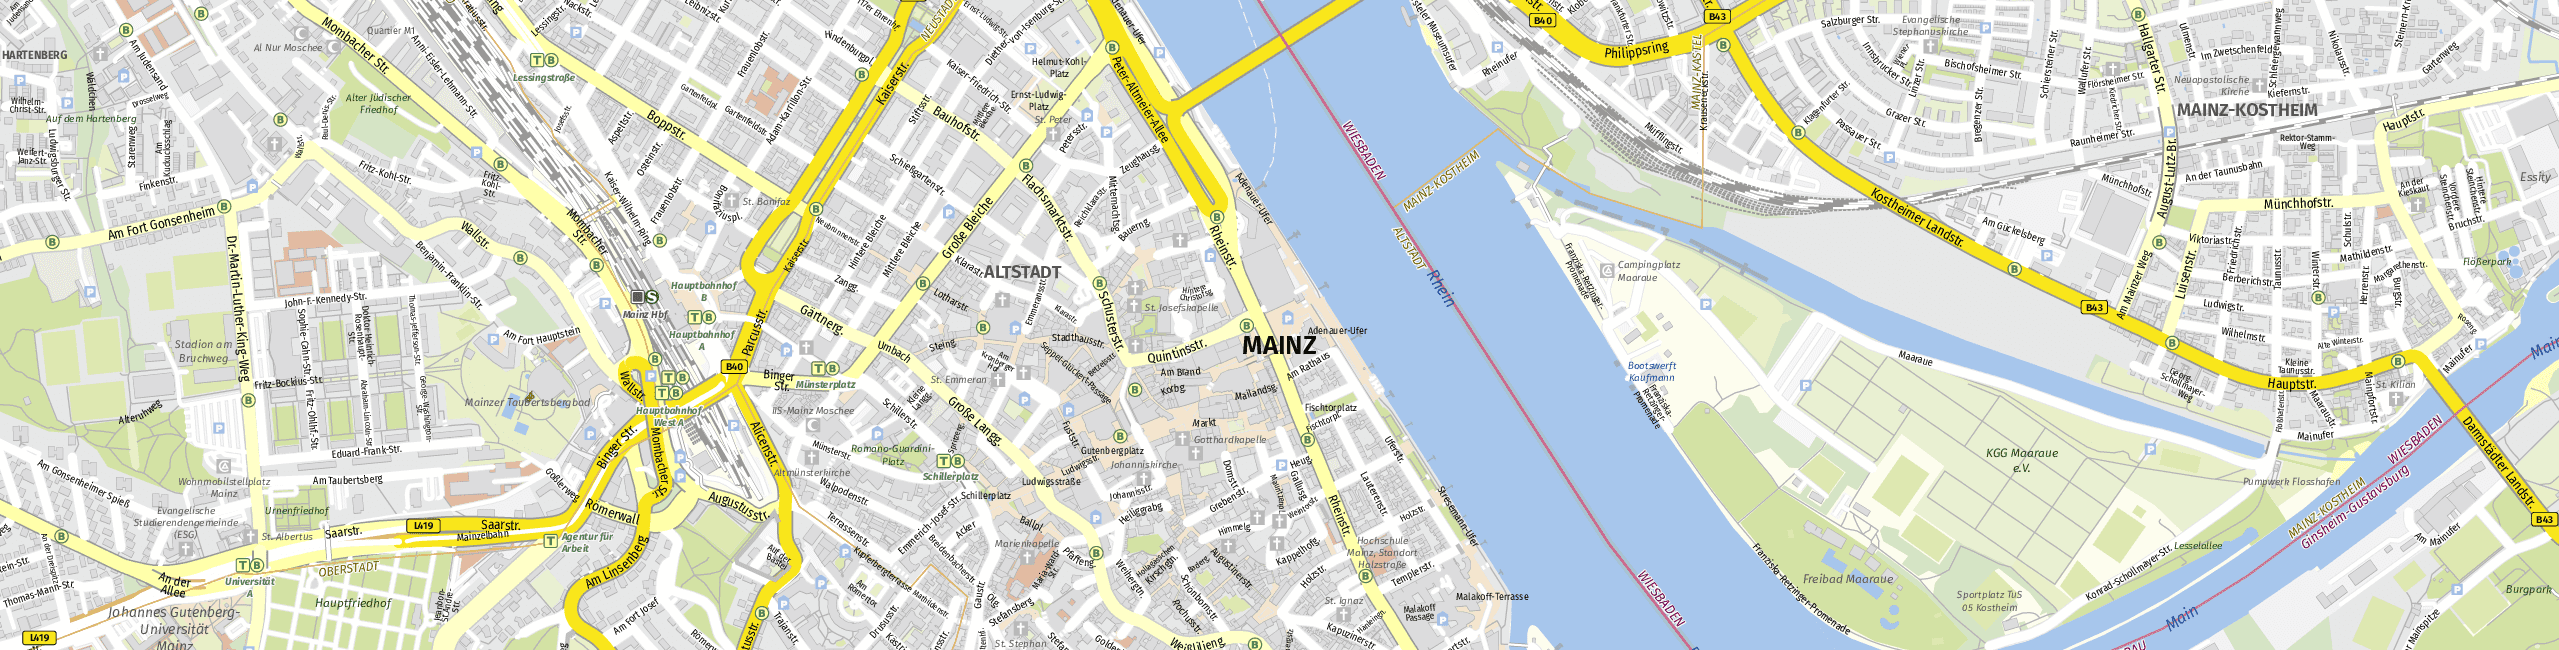 Stadtplan Mainz zum Downloaden.